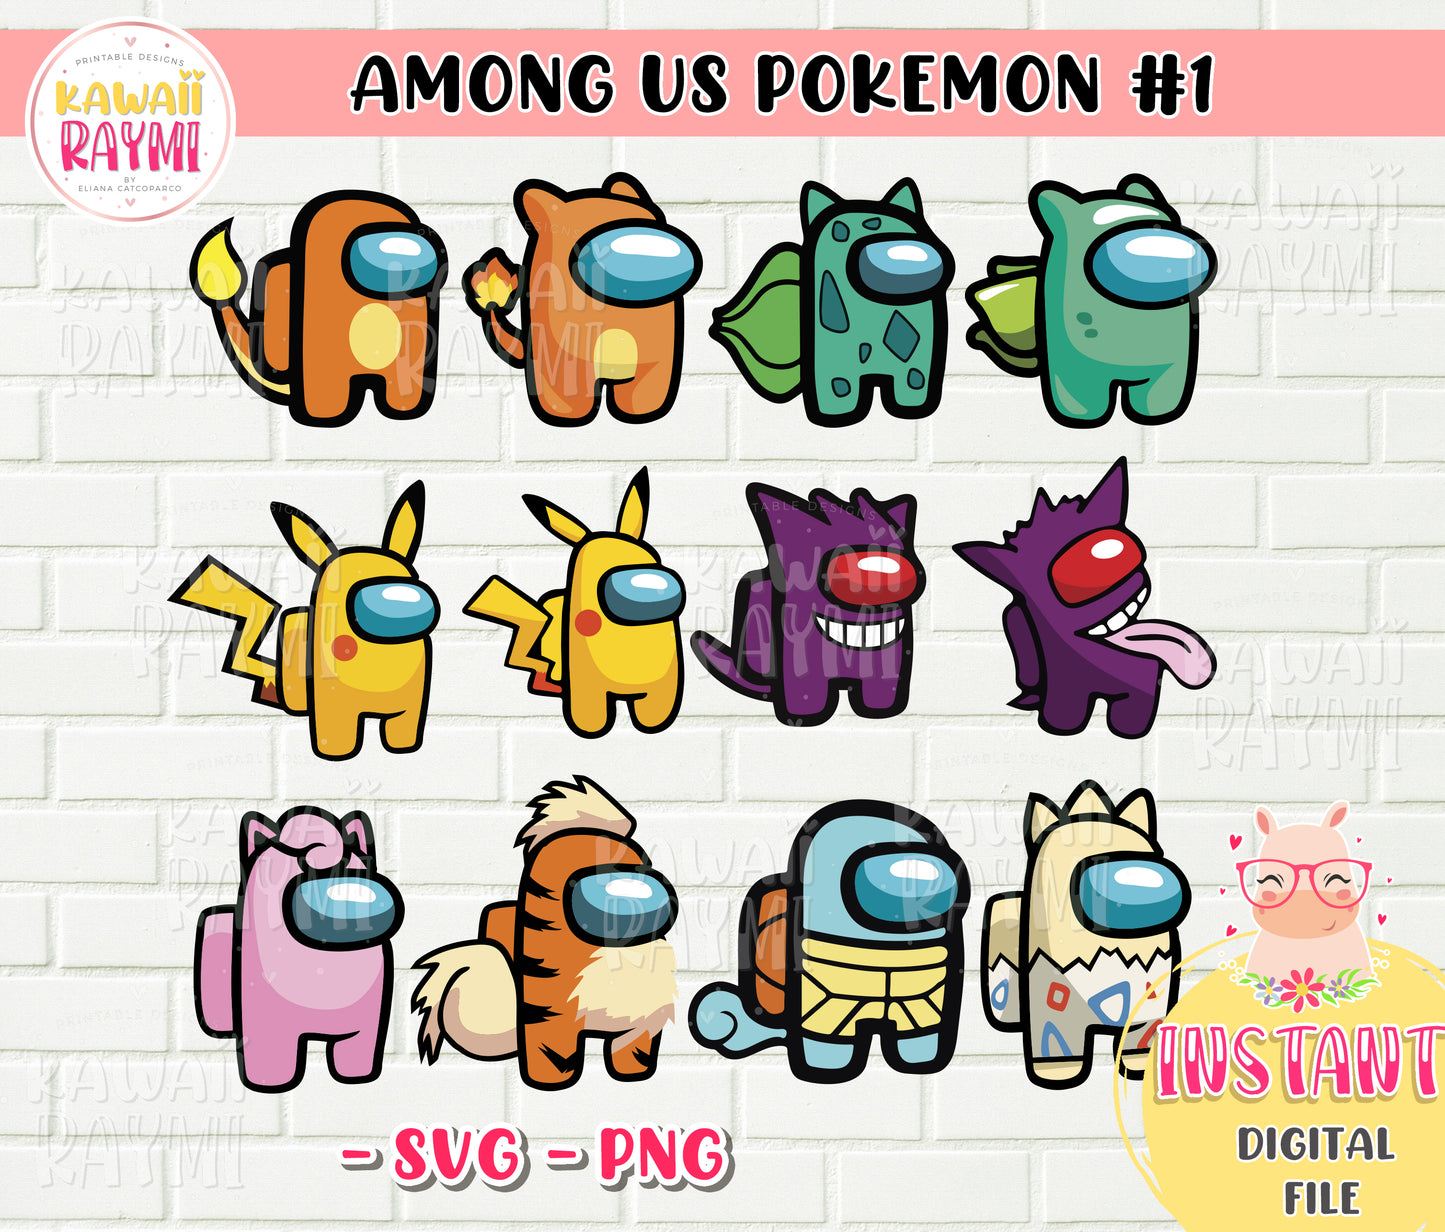 Among us pokemon - SVG - PNG